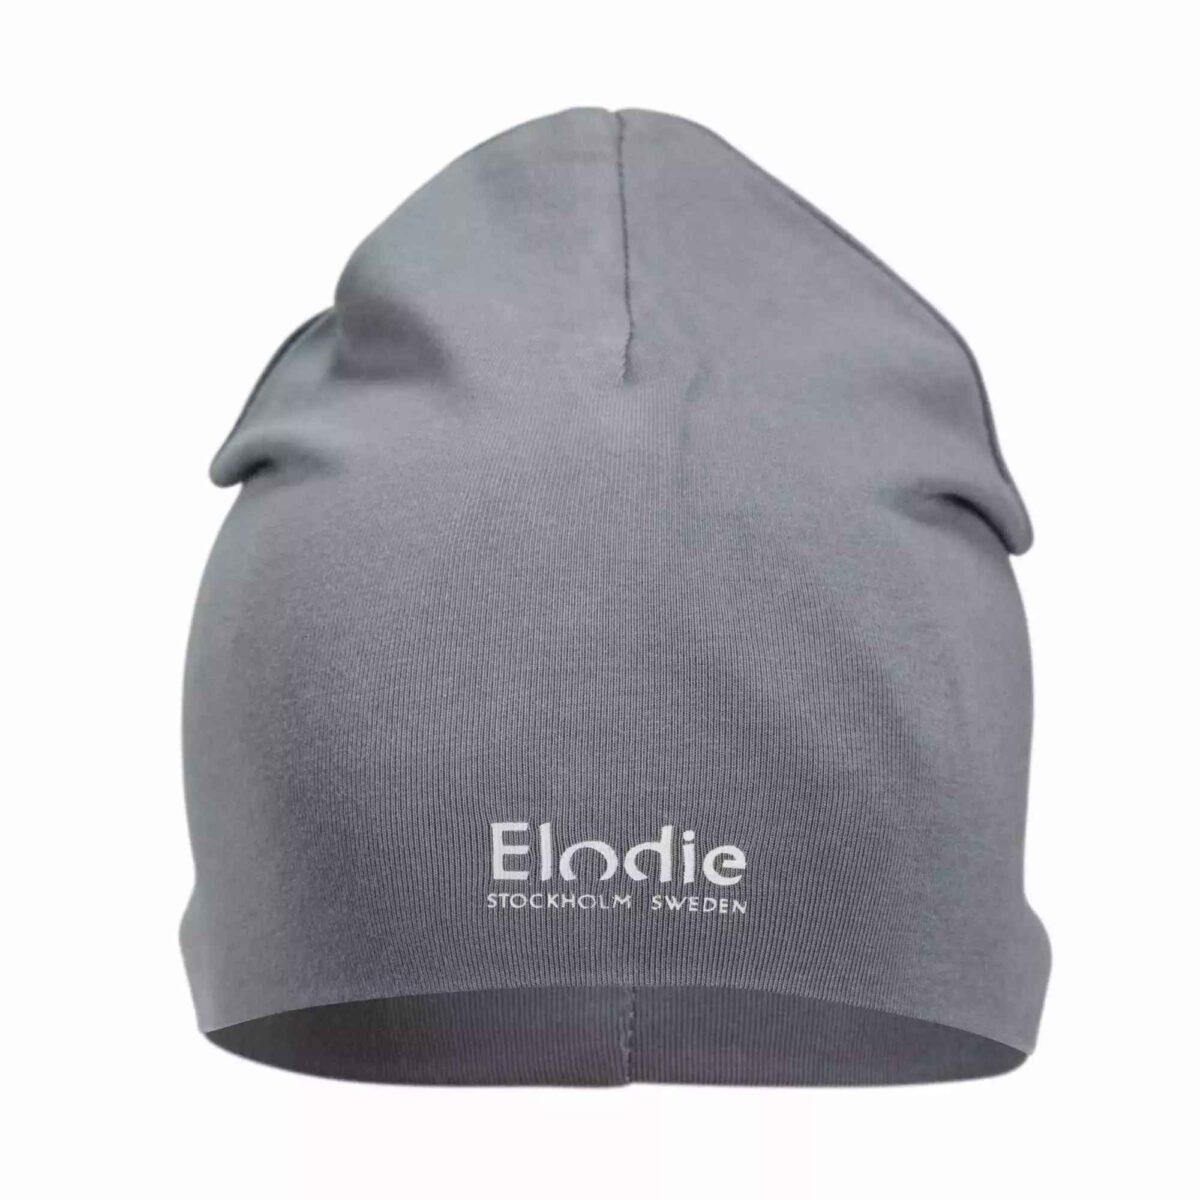 Elodie Details - Logo Beanie - Tender Blue 0-6 Months - Ubrania I Akcesoria &Gt; Ubrania &Gt; Ubrania Dla Dzieci I Niemowląt